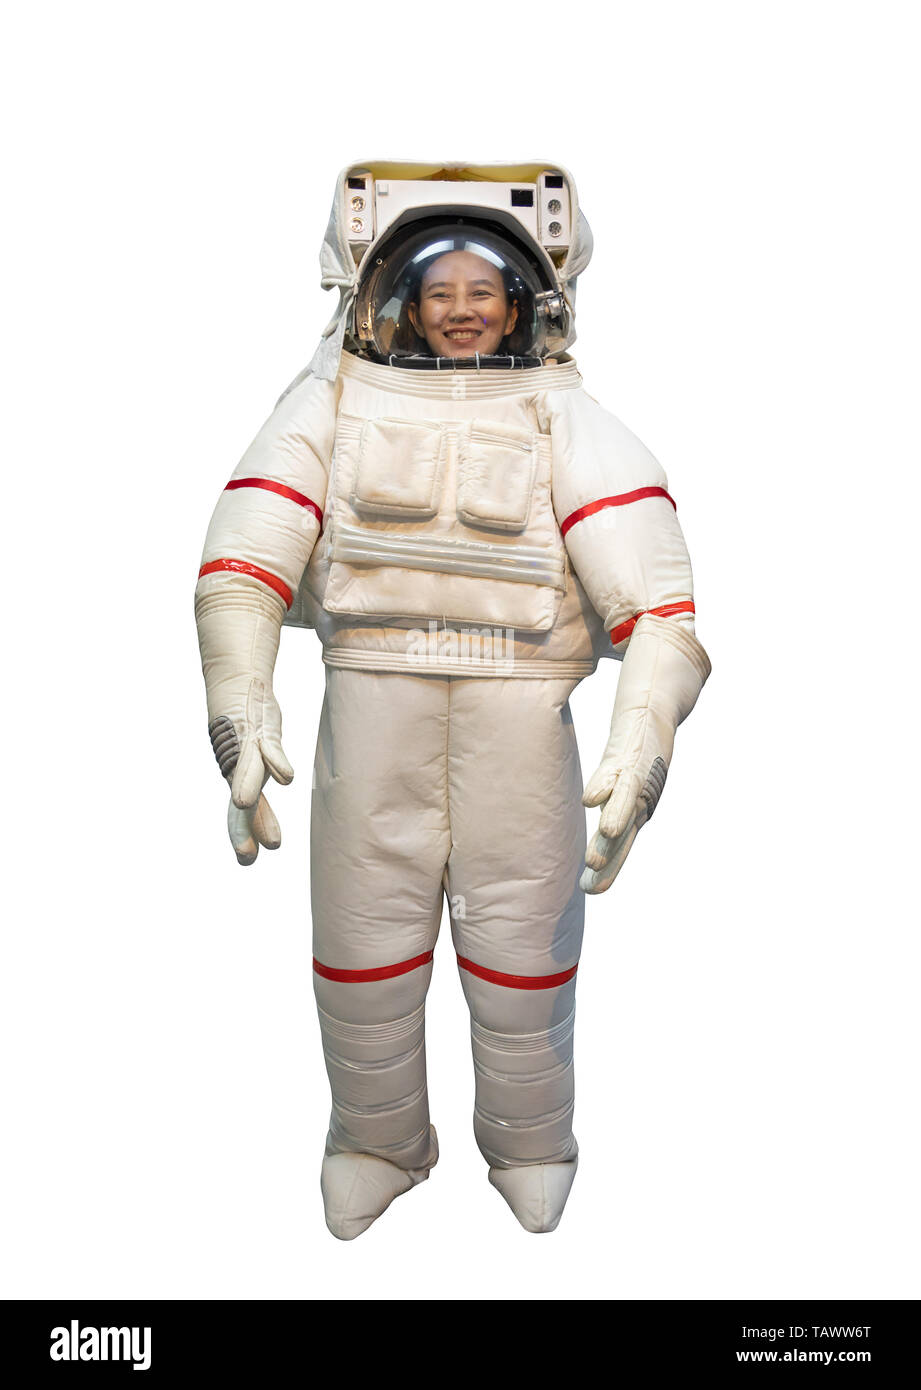  Xuomuen Disfraz de astronauta para bebés, niños y